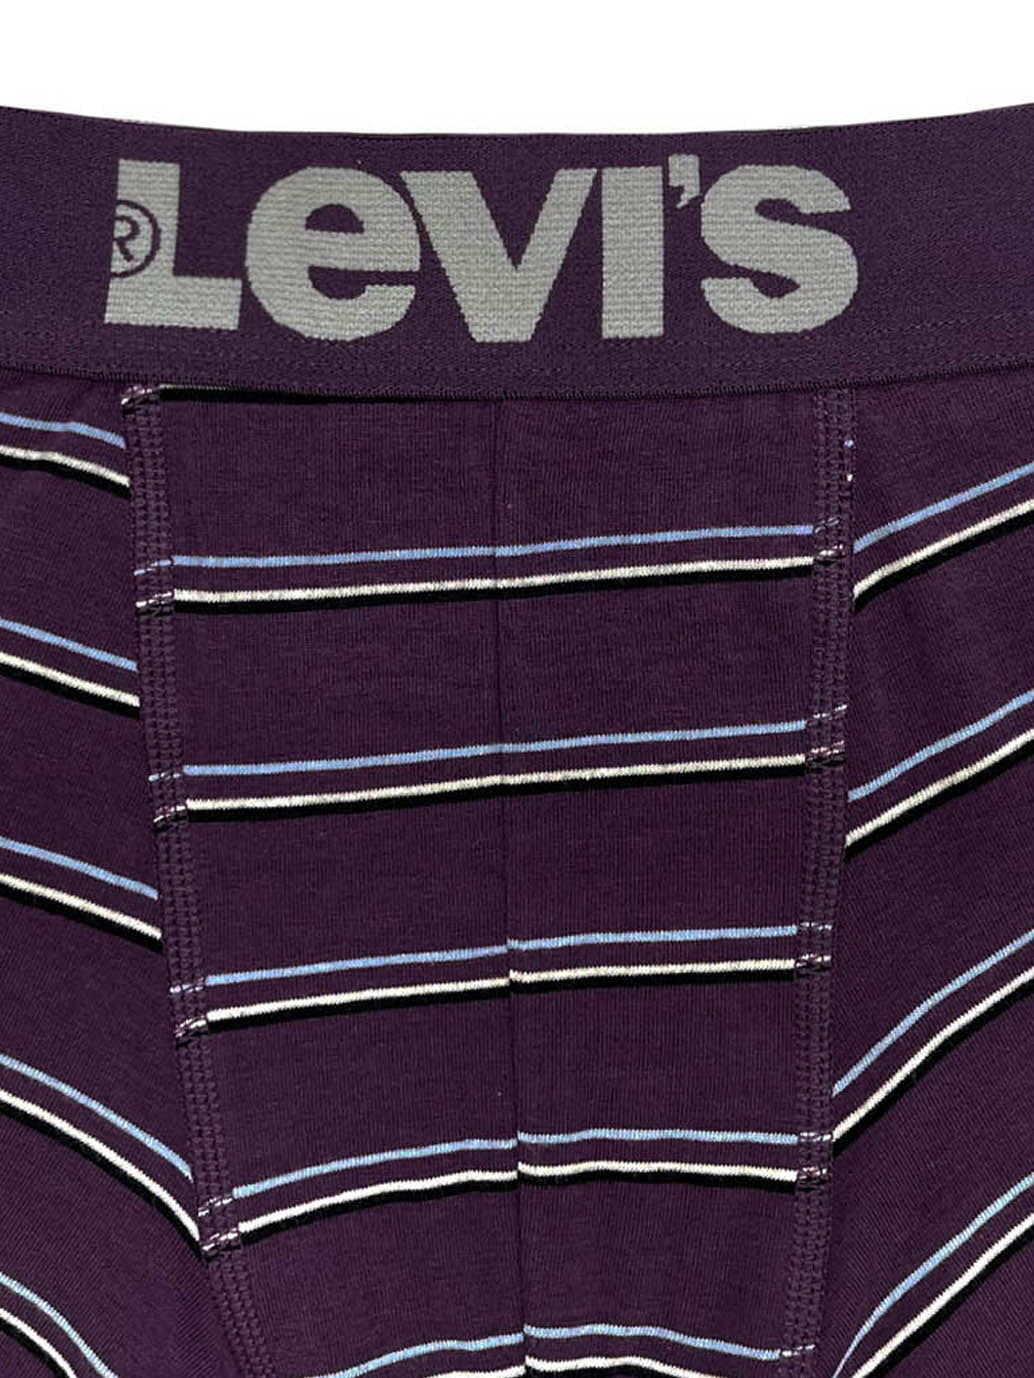 Levi's® Boxer Brief 平腳內褲